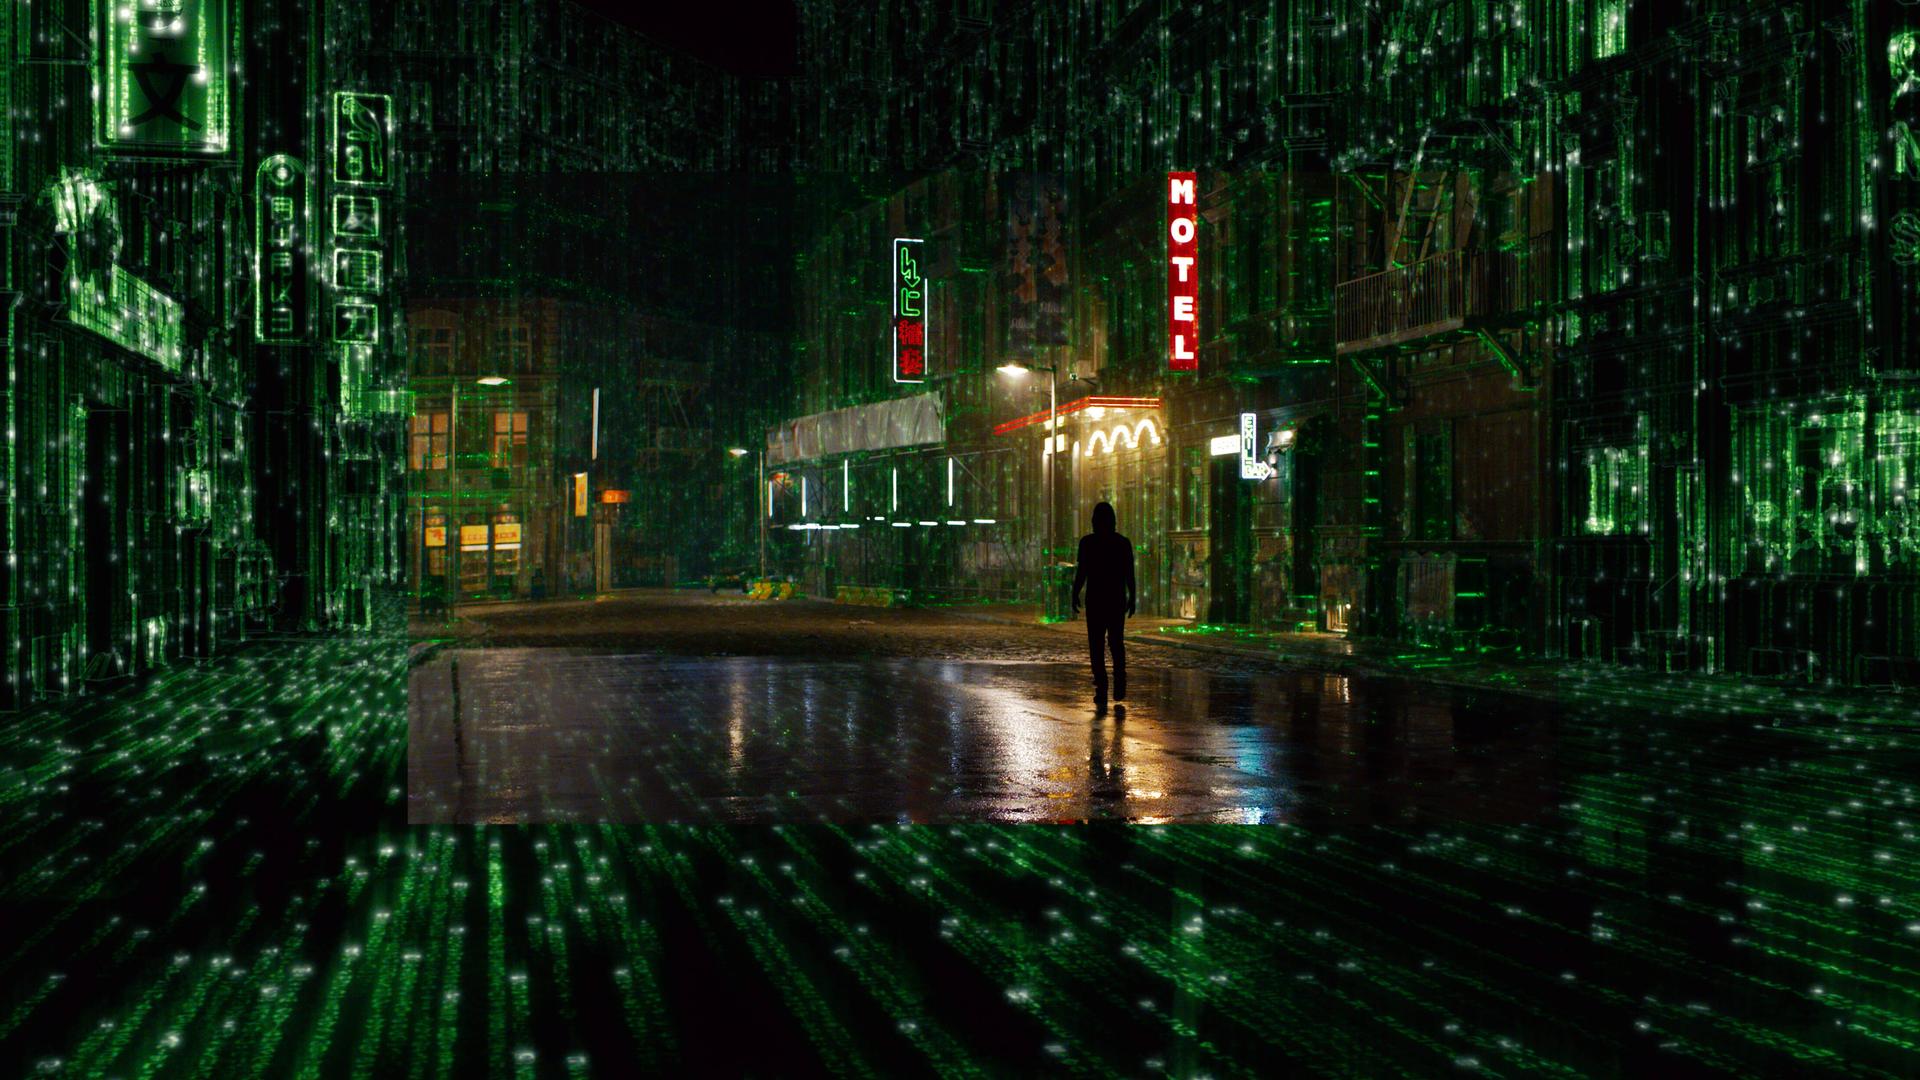 Filmszene aus Matrix 4 Resurrections von Lana Wachowski mit Keanu Reeves. Zu sehen ist eine dystopisch anumtende Stadt in nächtlicher Beleuchtung.